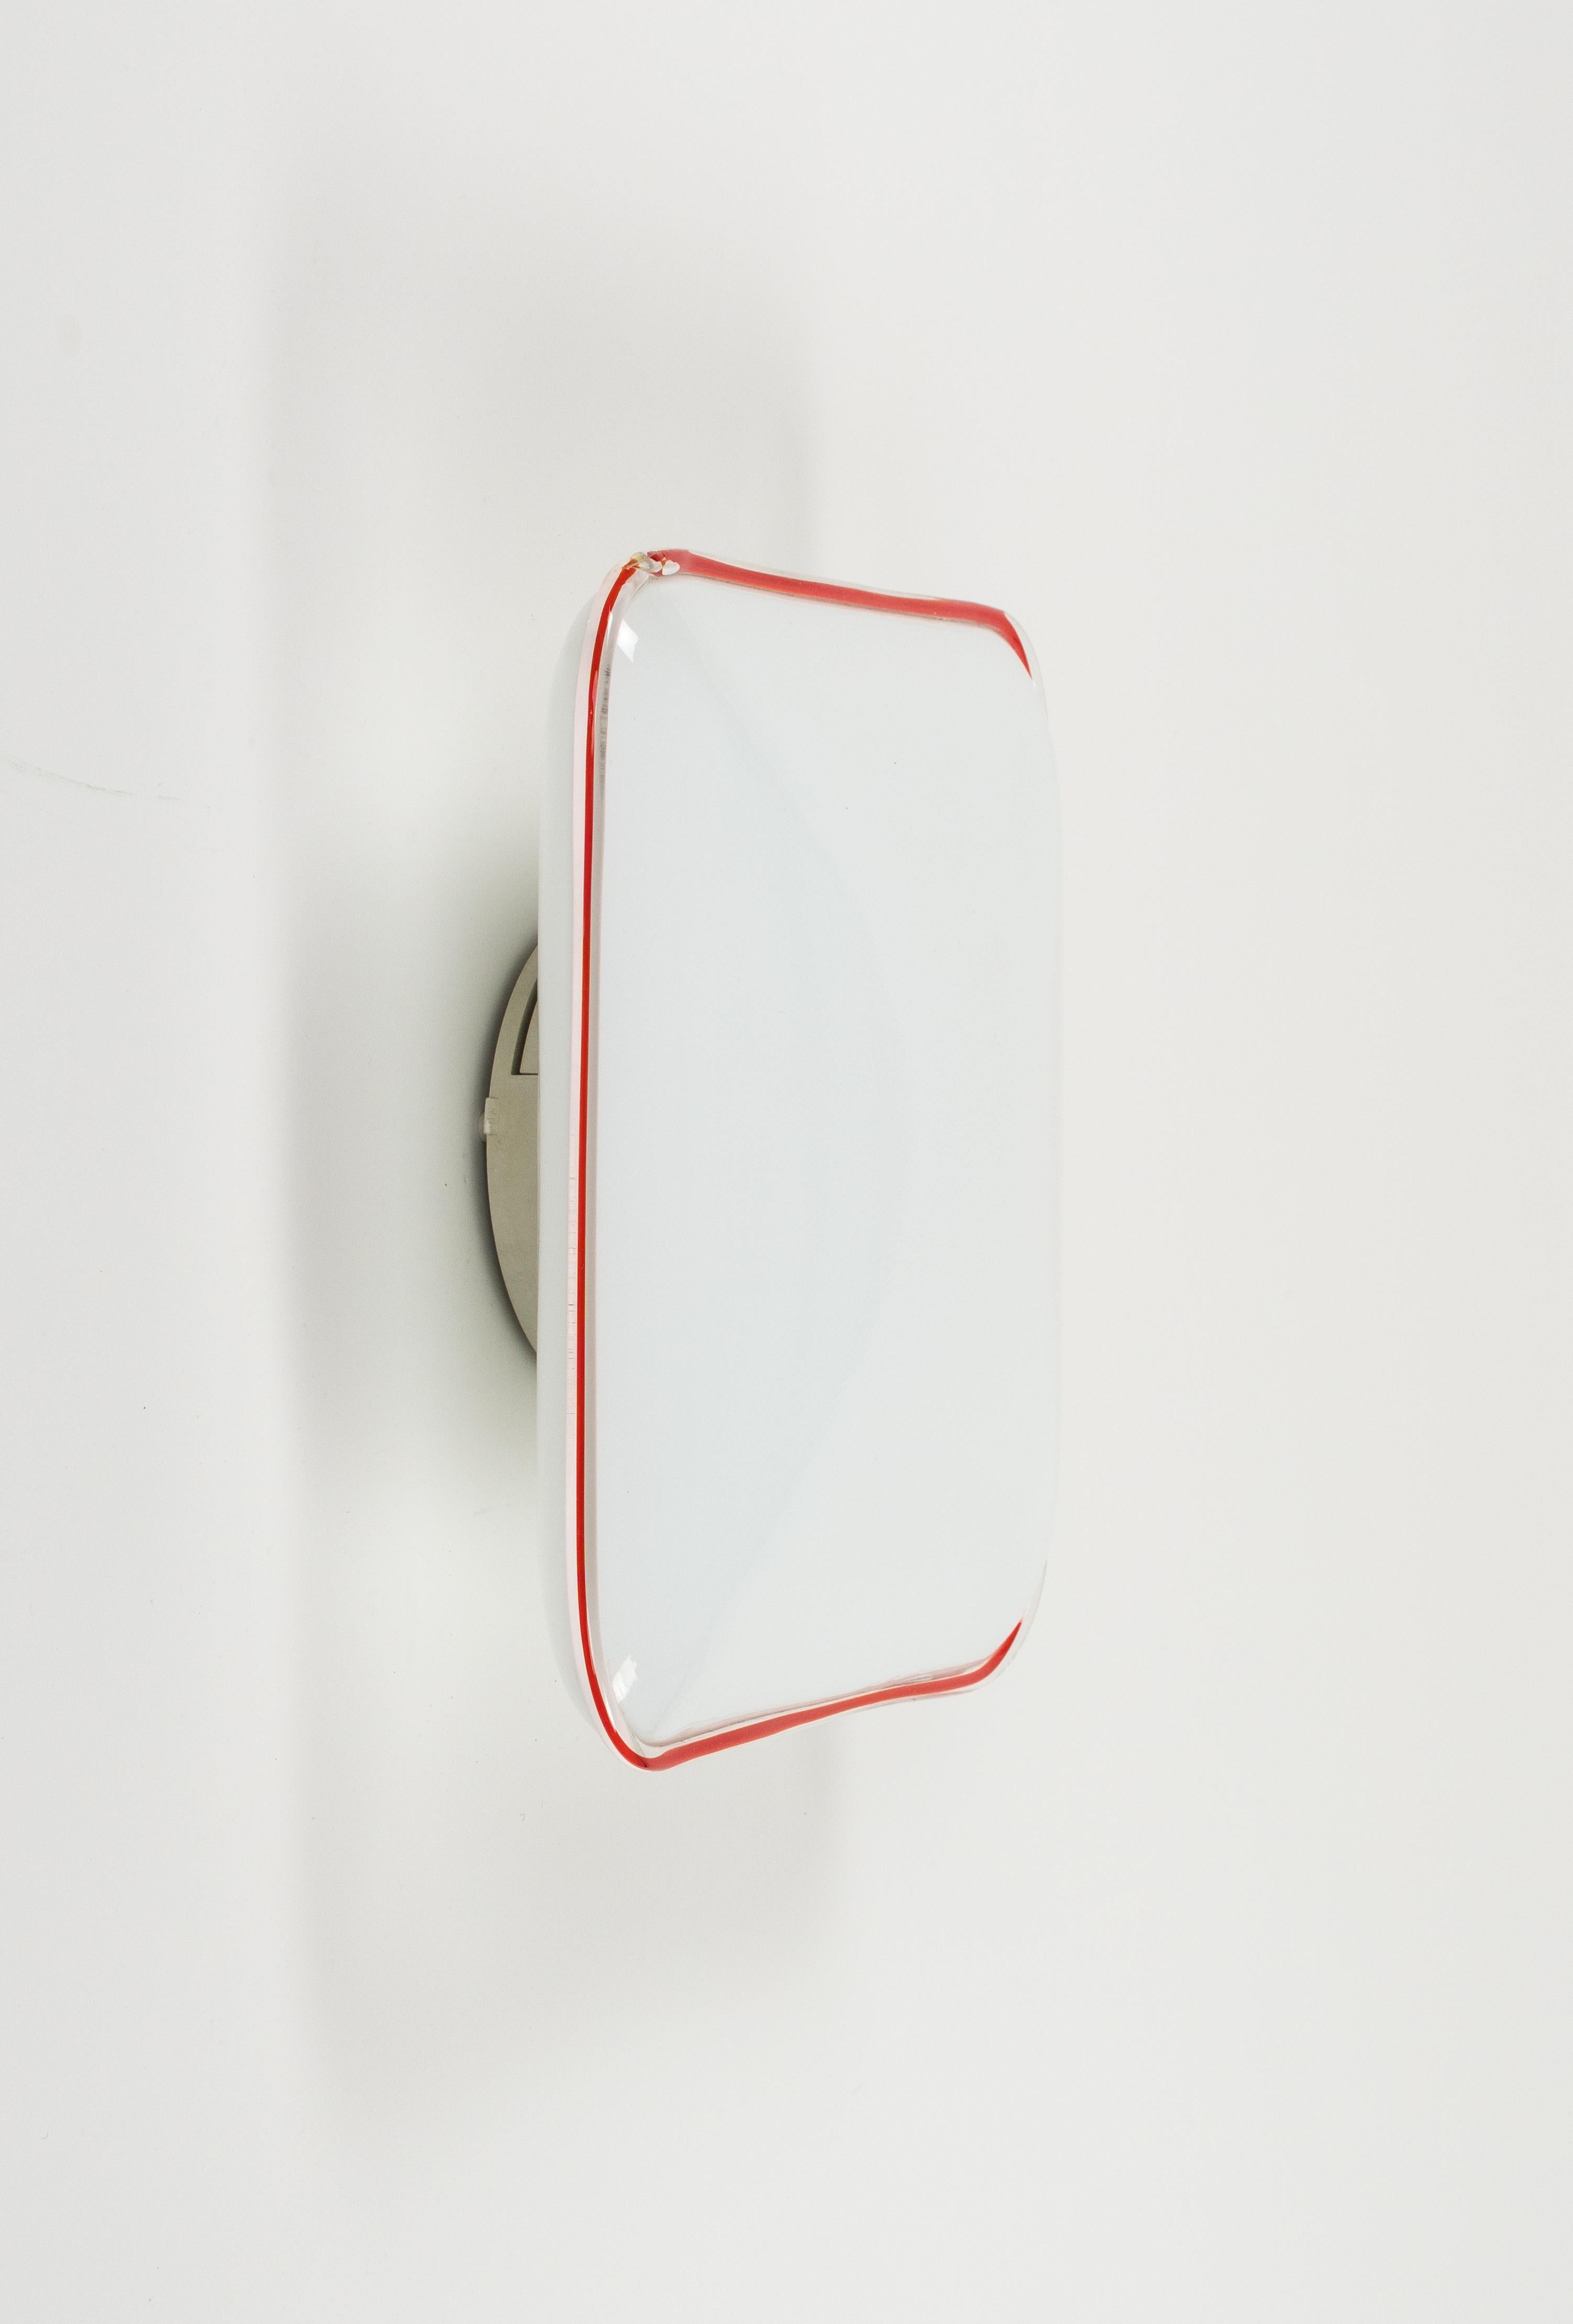 Plafonnier ou applique du milieu du siècle en verre Murano blanc avec une bordure en verre fusionné rouge et transparent par Leucos.

Fabriqué en Italie dans les années 1970.

Il utilise 2 ampoules. 

Le Label d'origine est encore attaché comme le